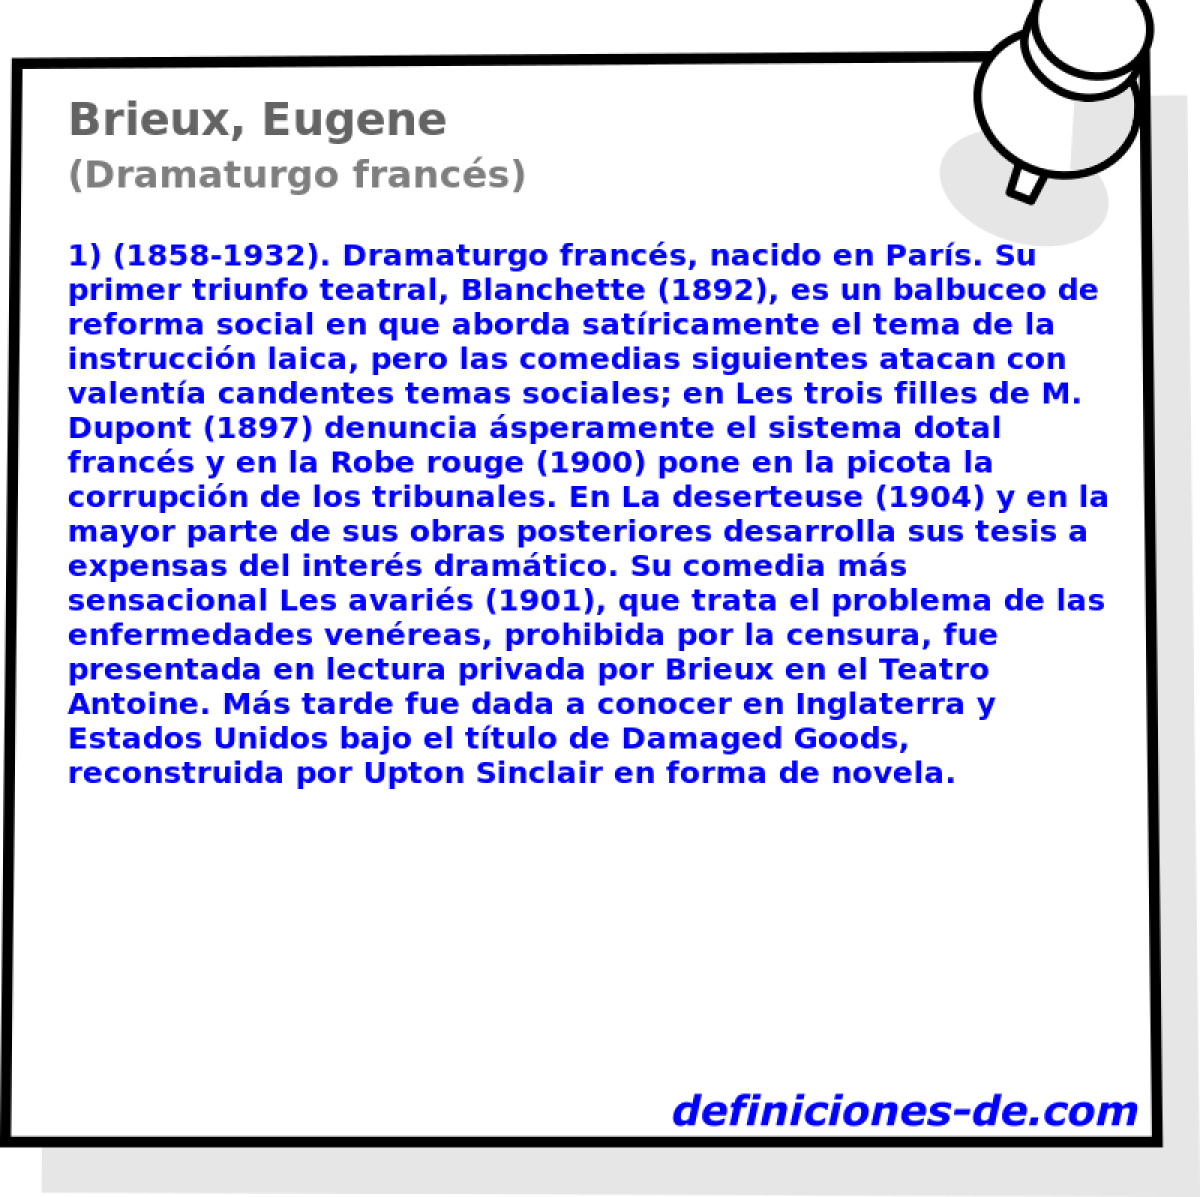 Brieux, Eugene (Dramaturgo francs)